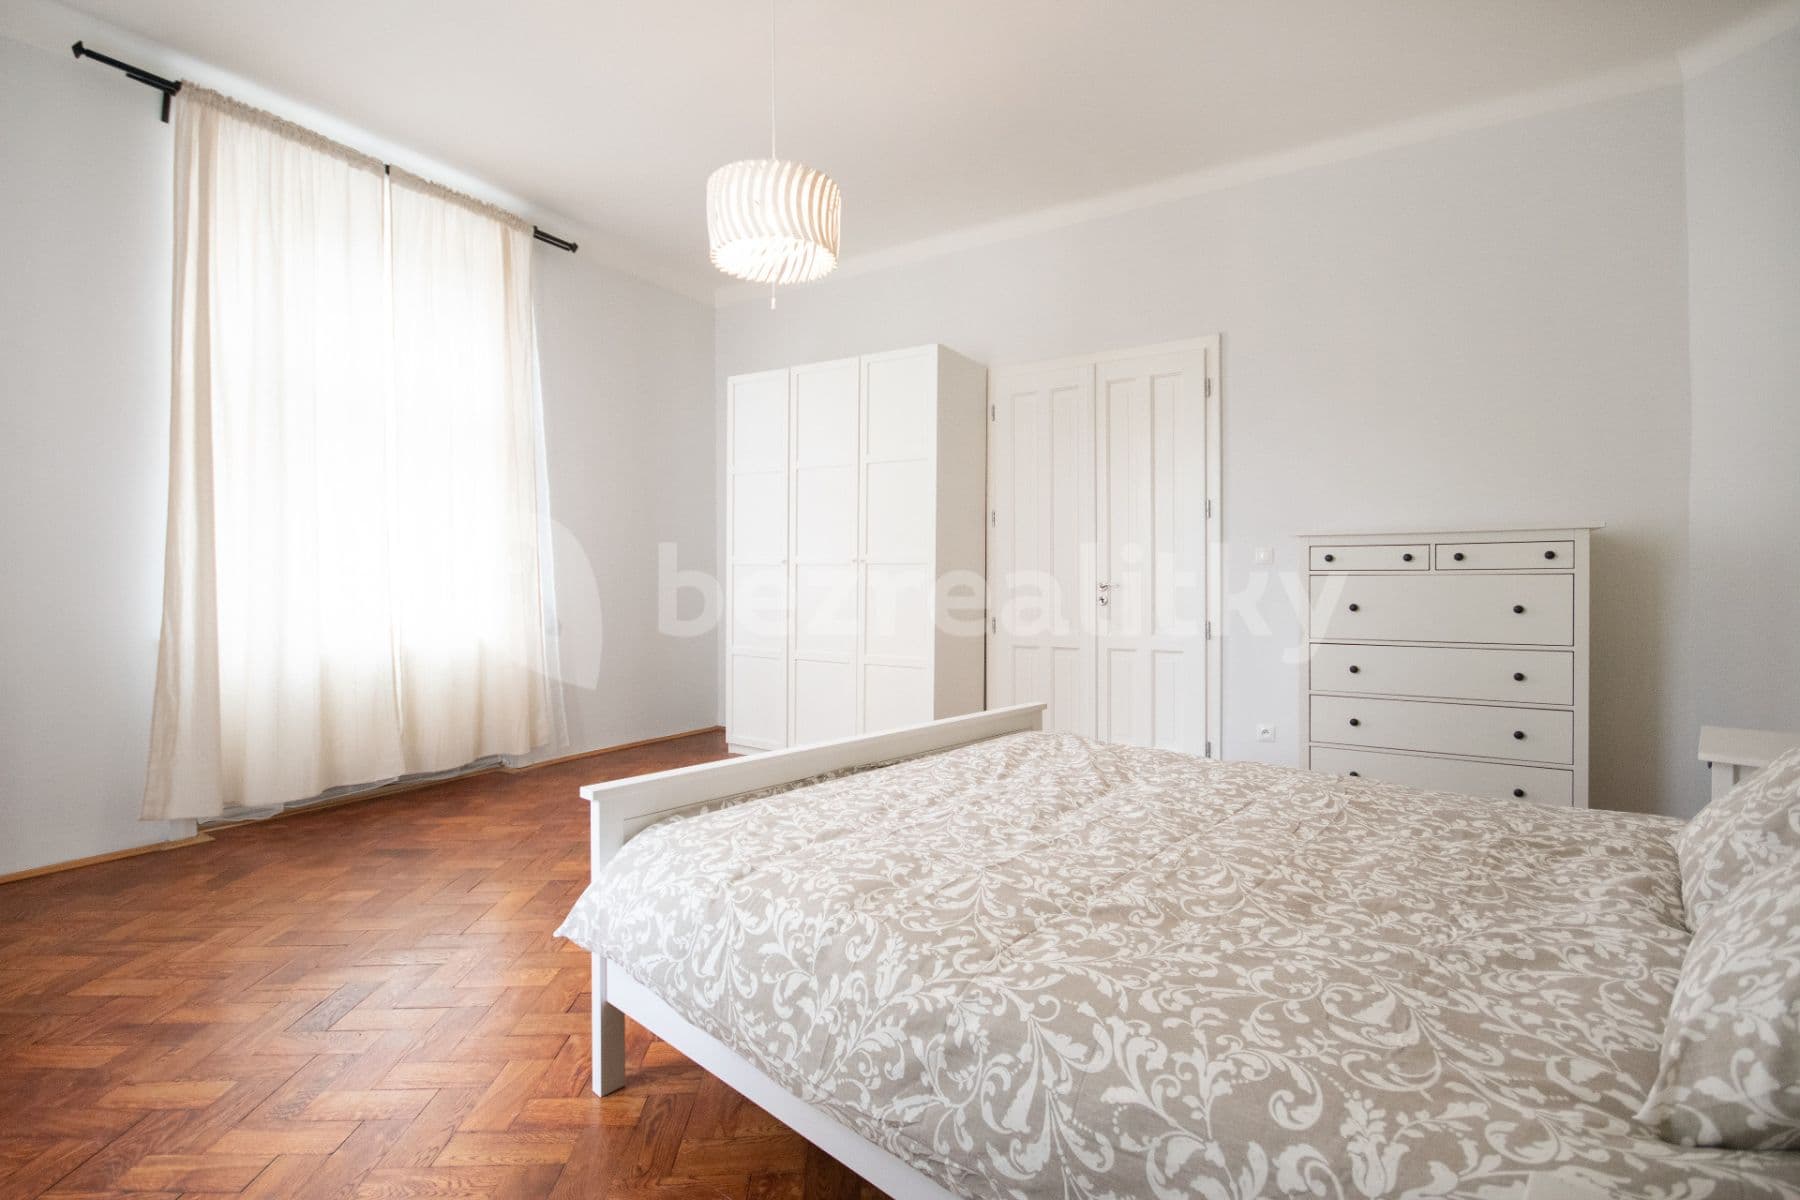 1 bedroom with open-plan kitchen flat to rent, 64 m², Kubelíkova, Prague, Prague